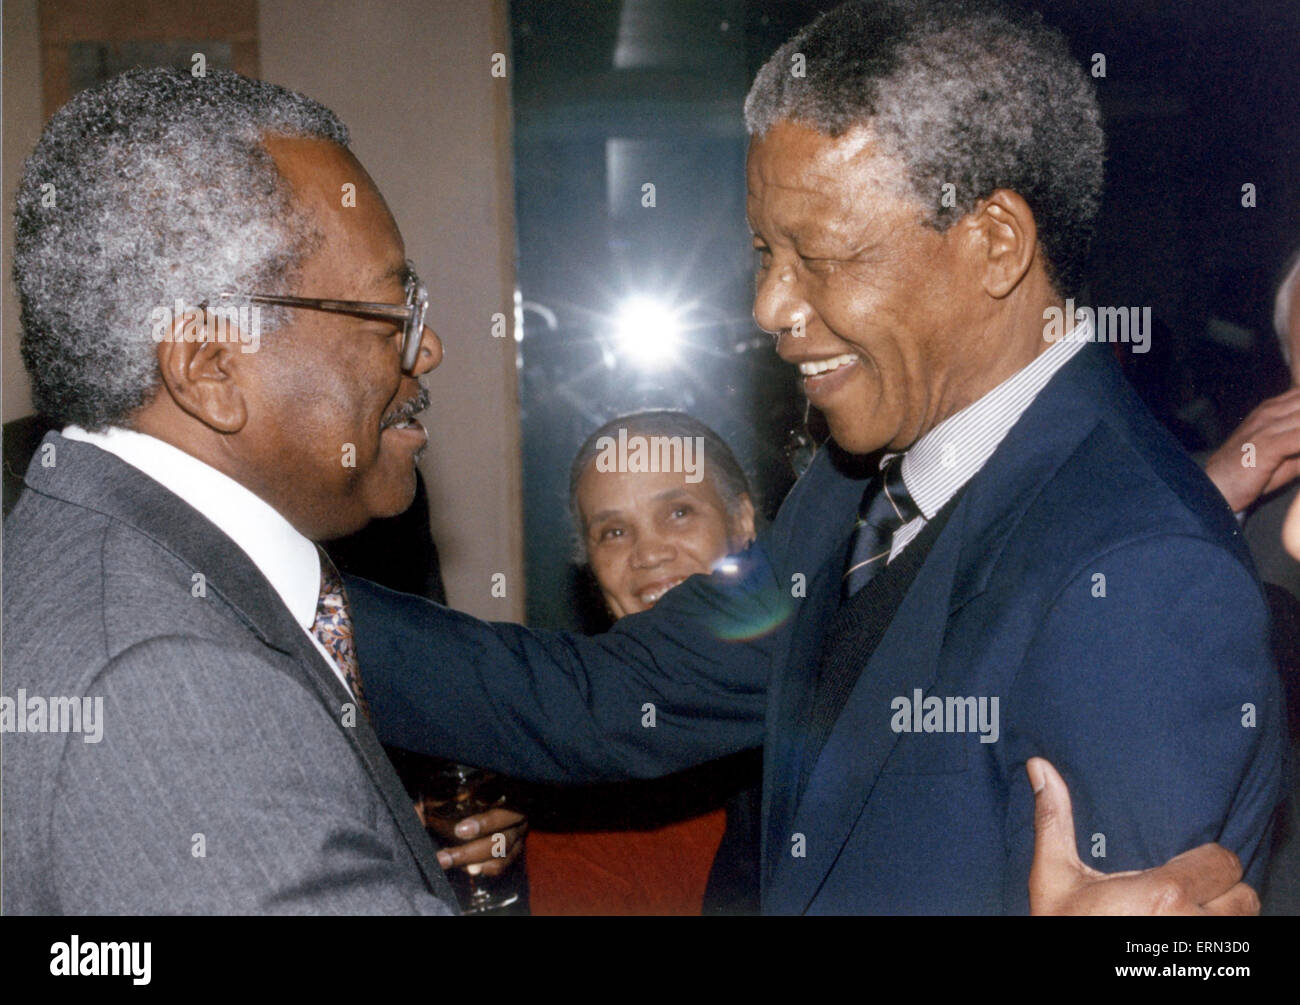 Stellvertretender Leiter, African National Congress, Nelson Mandela besucht London, UK, zum ersten Mal seit seiner Entlassung (11. Februar 1990), Sonntag, 15. April 1990. Mit Trevor McDonald, ITN News-Moderatorin abgebildet. Stockfoto